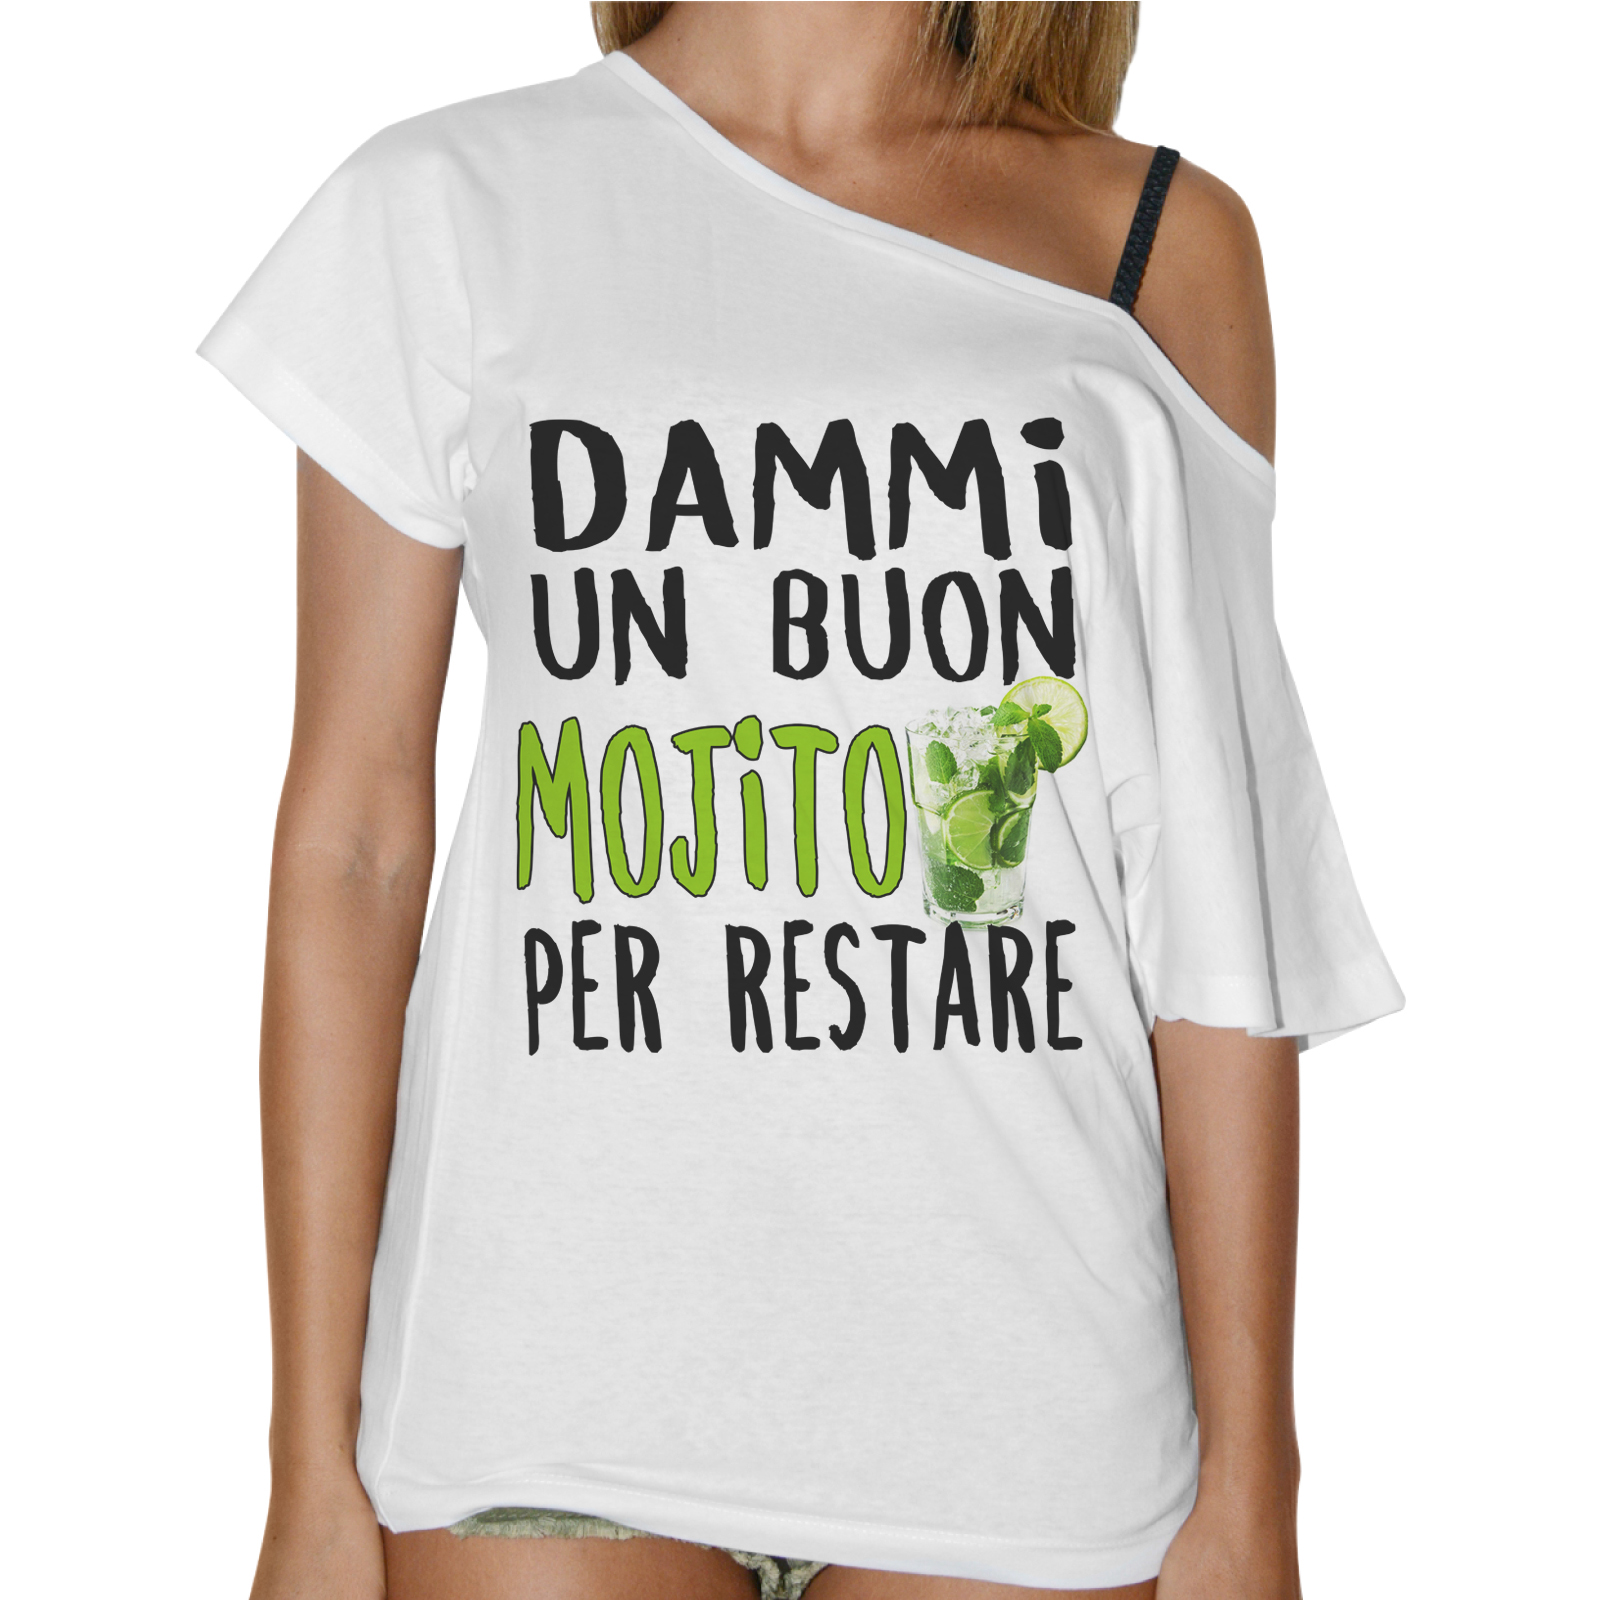 T-Shirt Donna Collo Barca BUON MOJITO